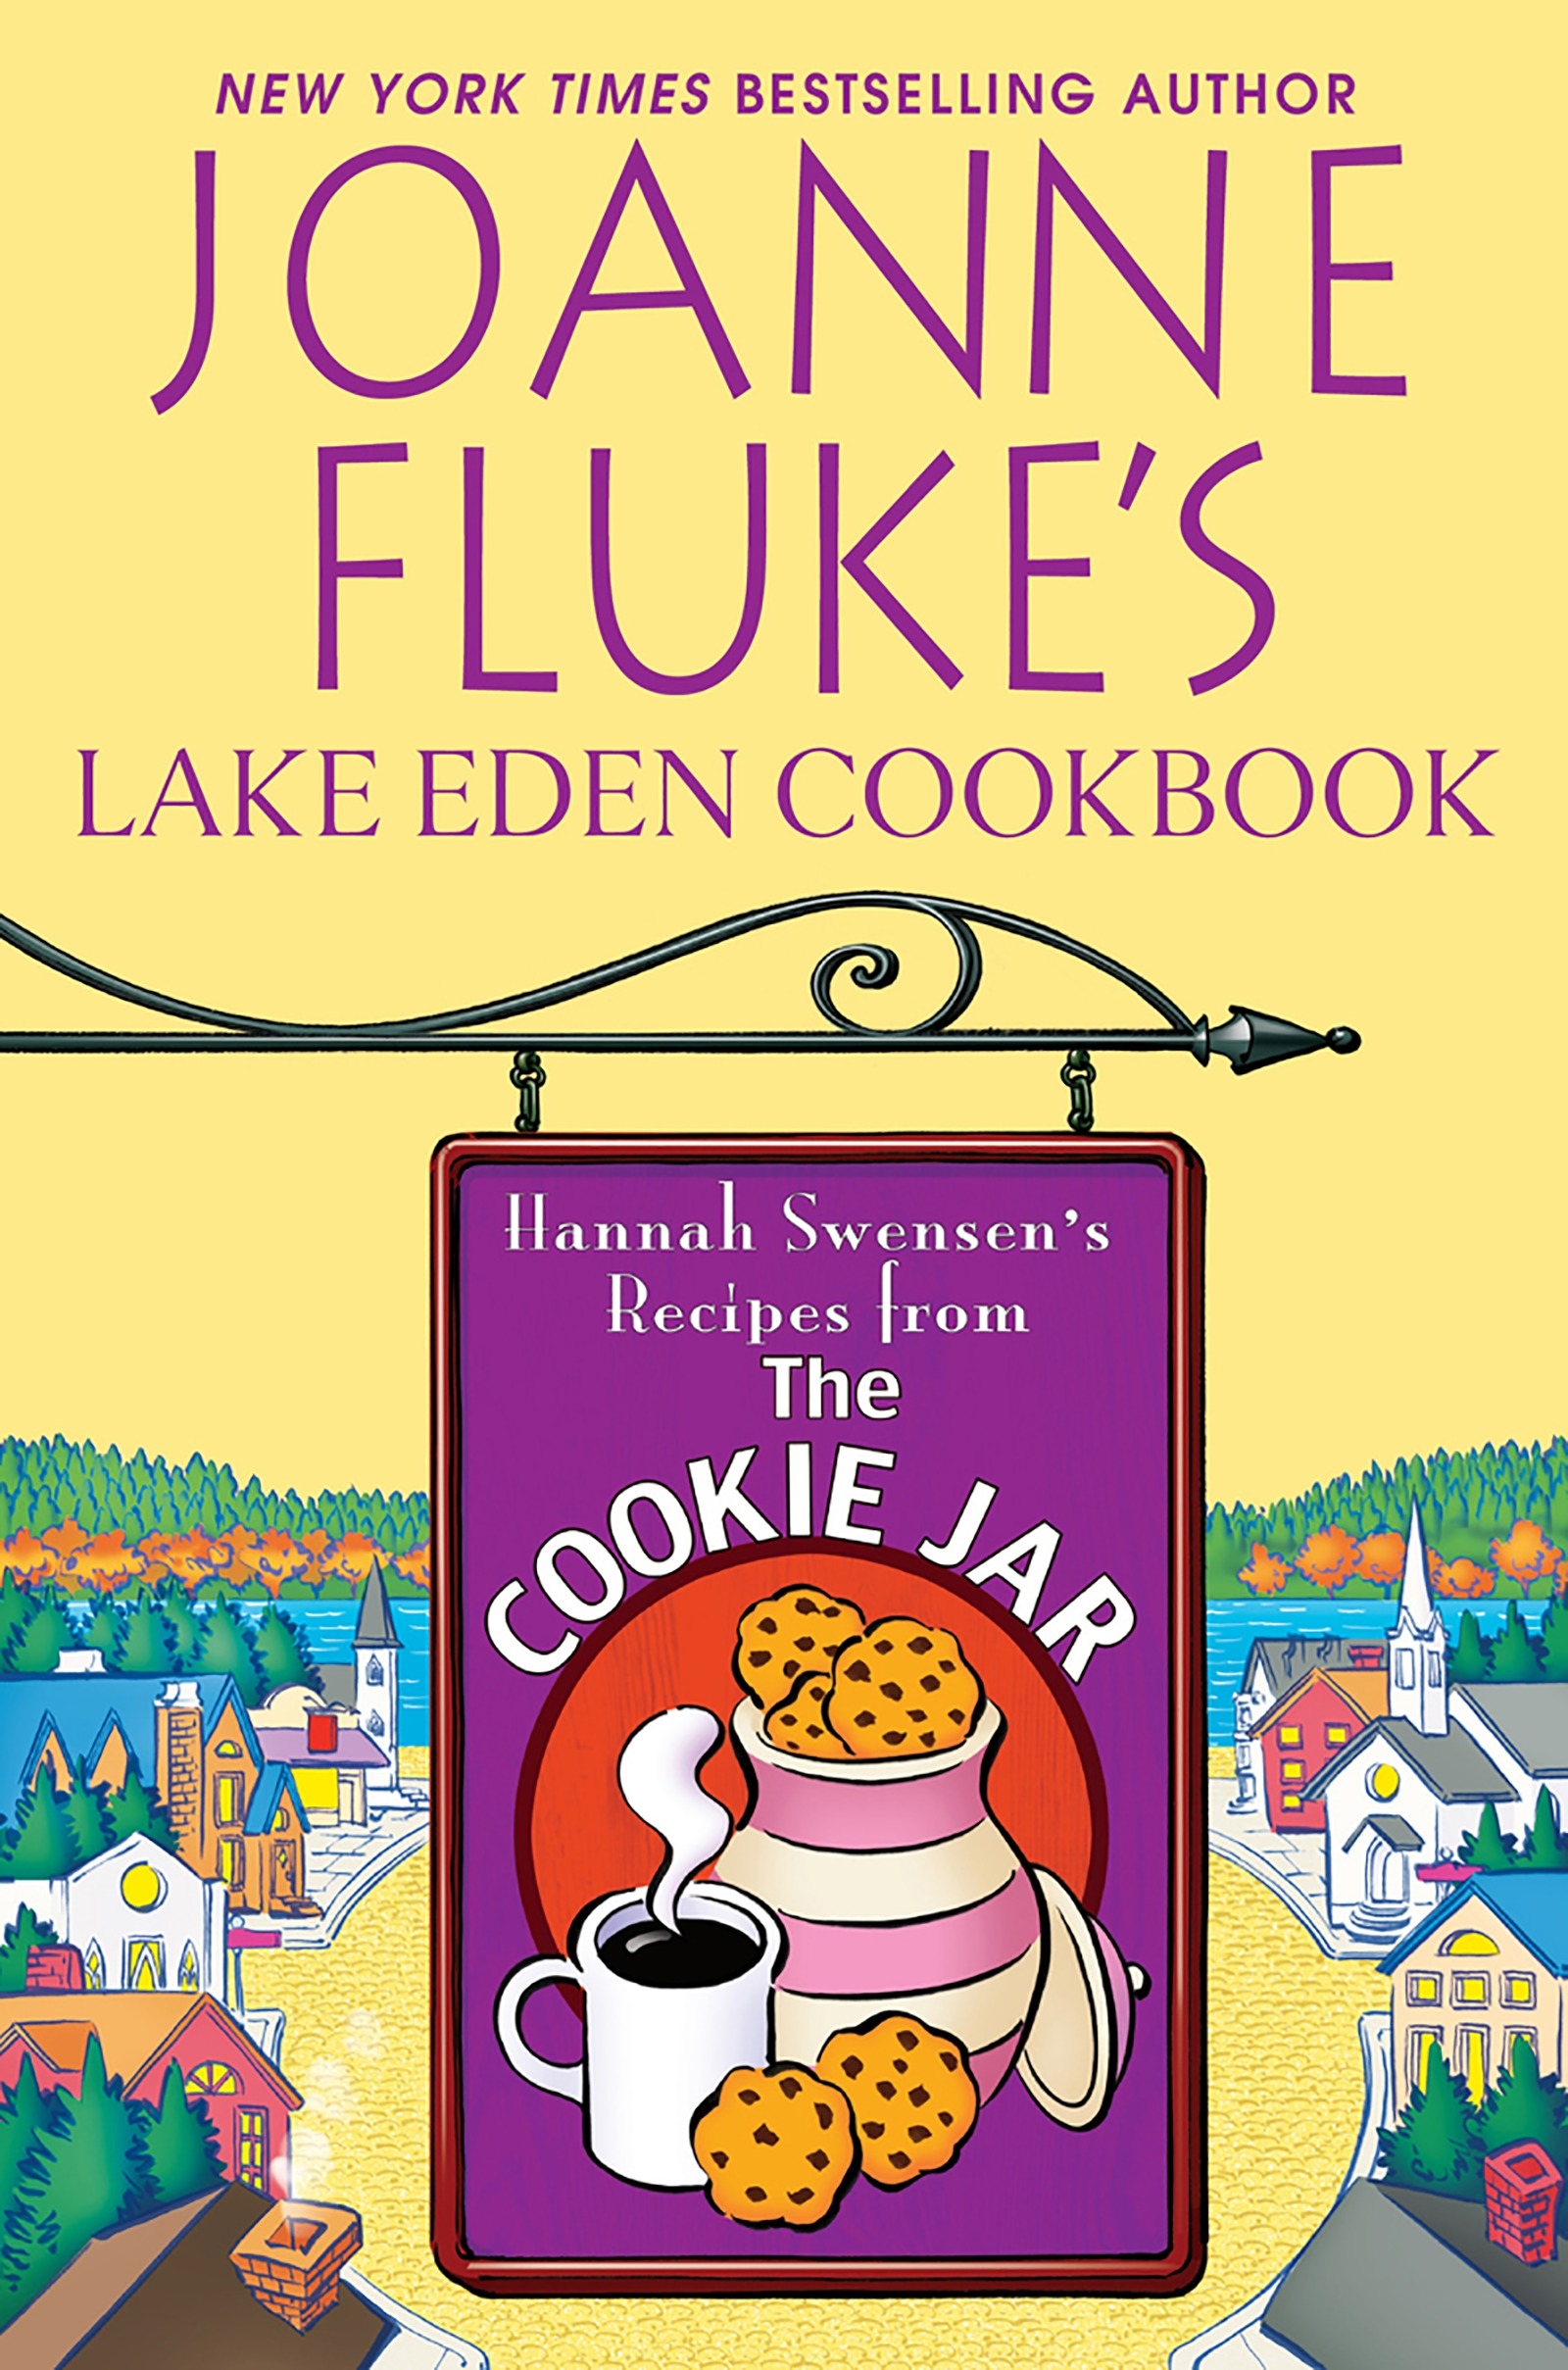 Joanne Fluke's Lake Eden Cookbook by Joanne Fluke Penguin Books Australia